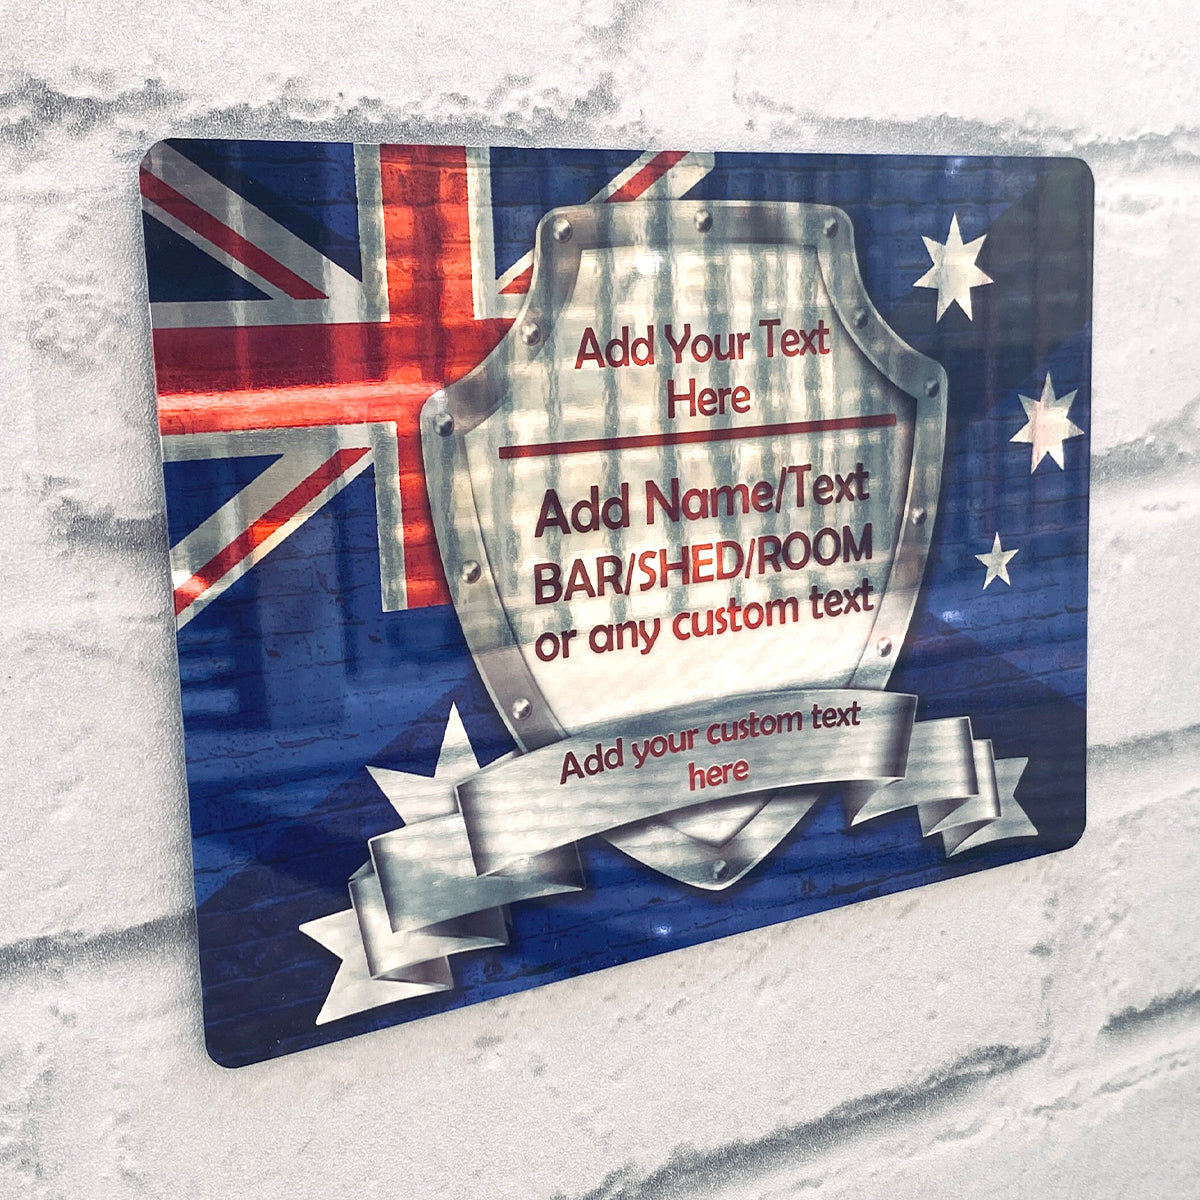 Schild mit australischer Flagge, hochglanzpoliert